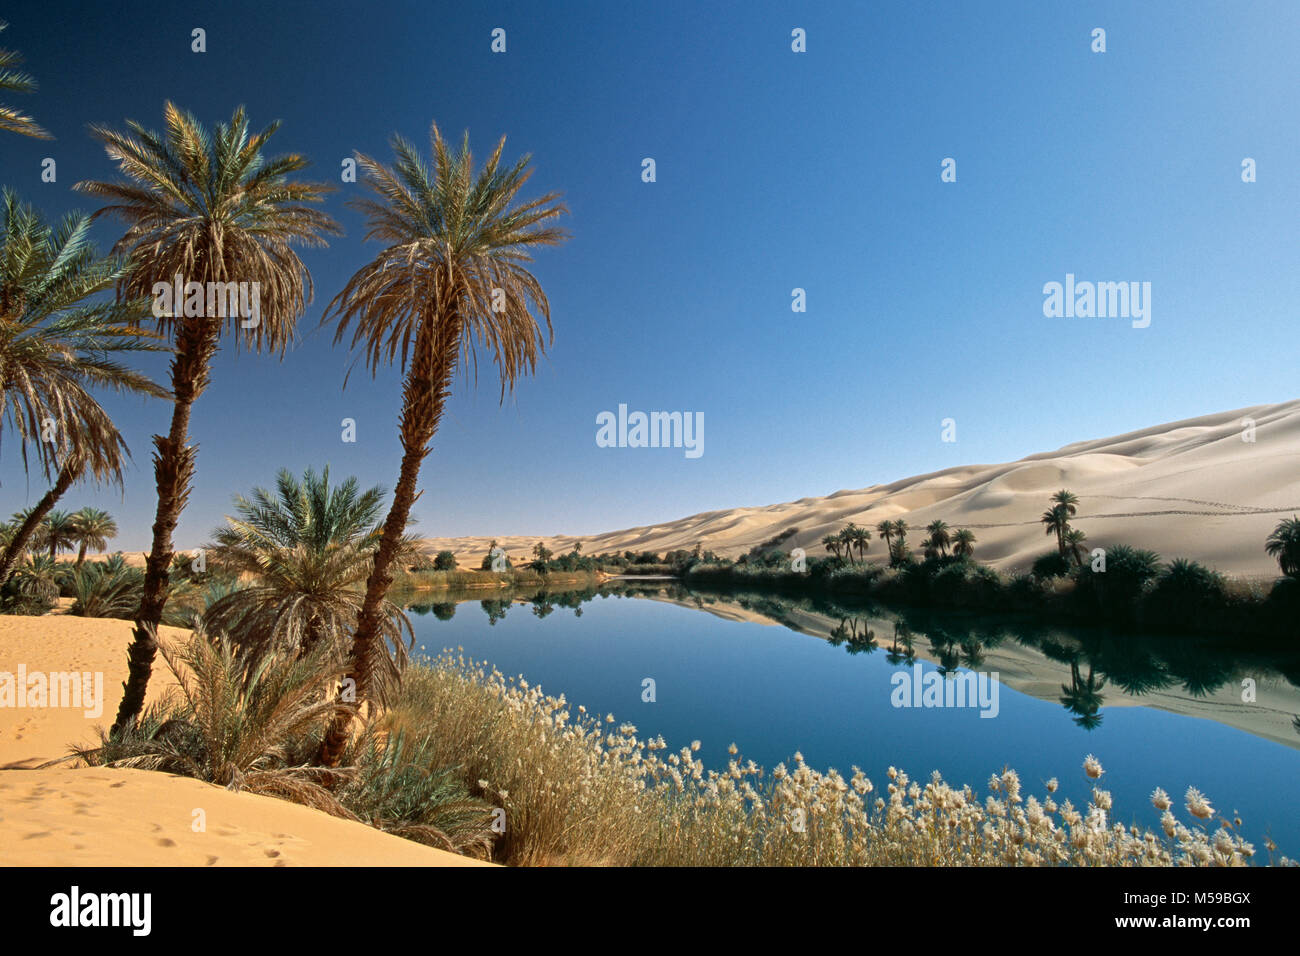 La Libye. Ubari. Désert du Sahara. Ubari Sandsea. Um El Ma salt lake. Oasis. Palmiers. L'eau. Banque D'Images